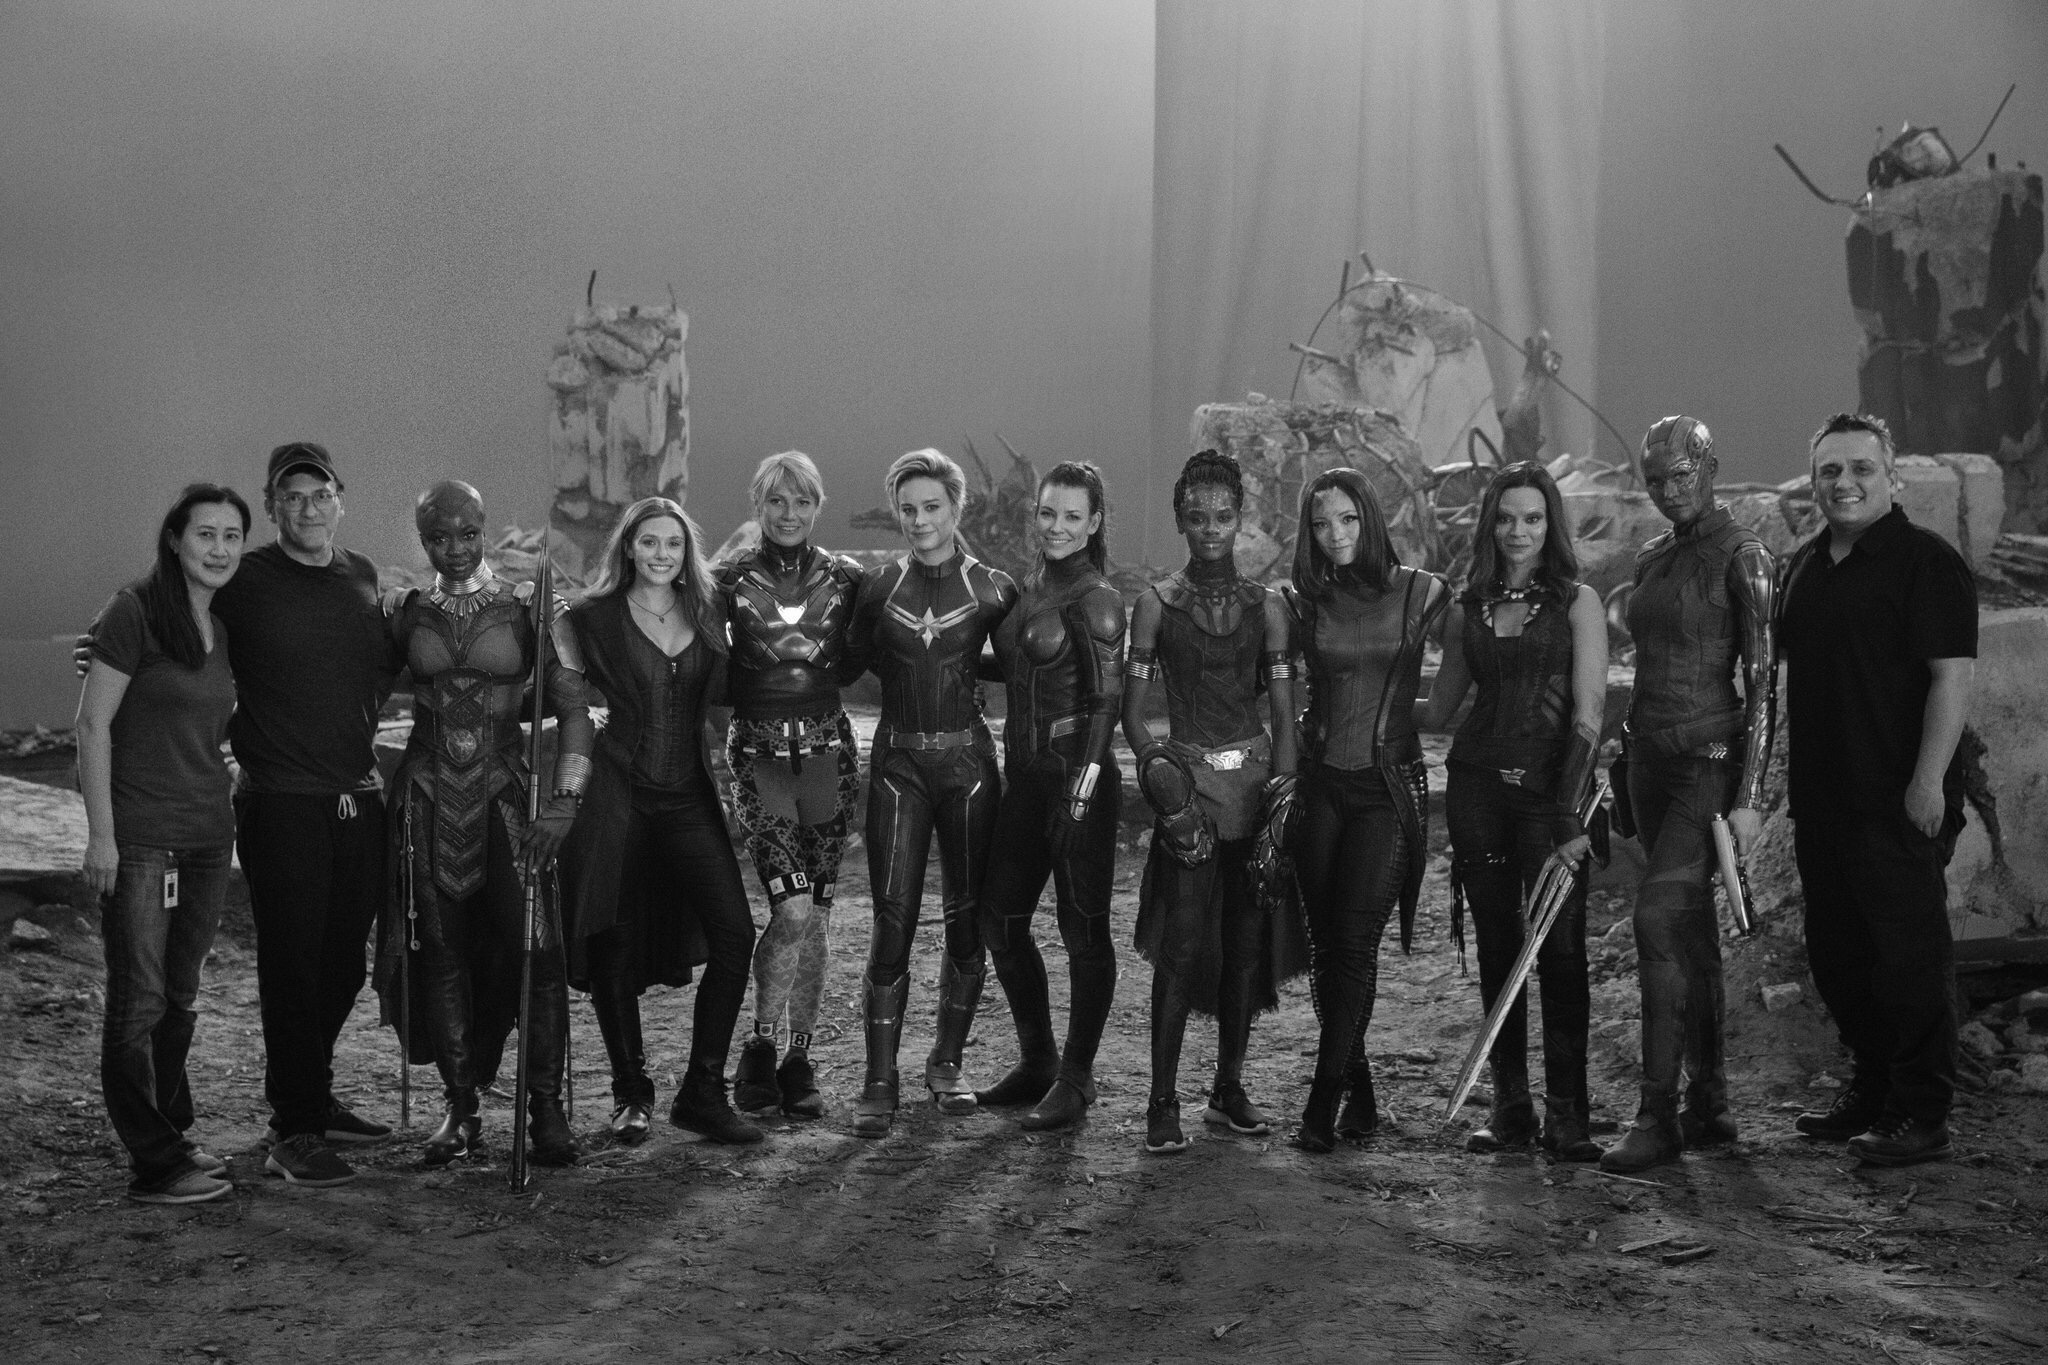 Female Avengers Assemble for BTS “Avengers: Endgame” Photo – Prospective Pixie Dust